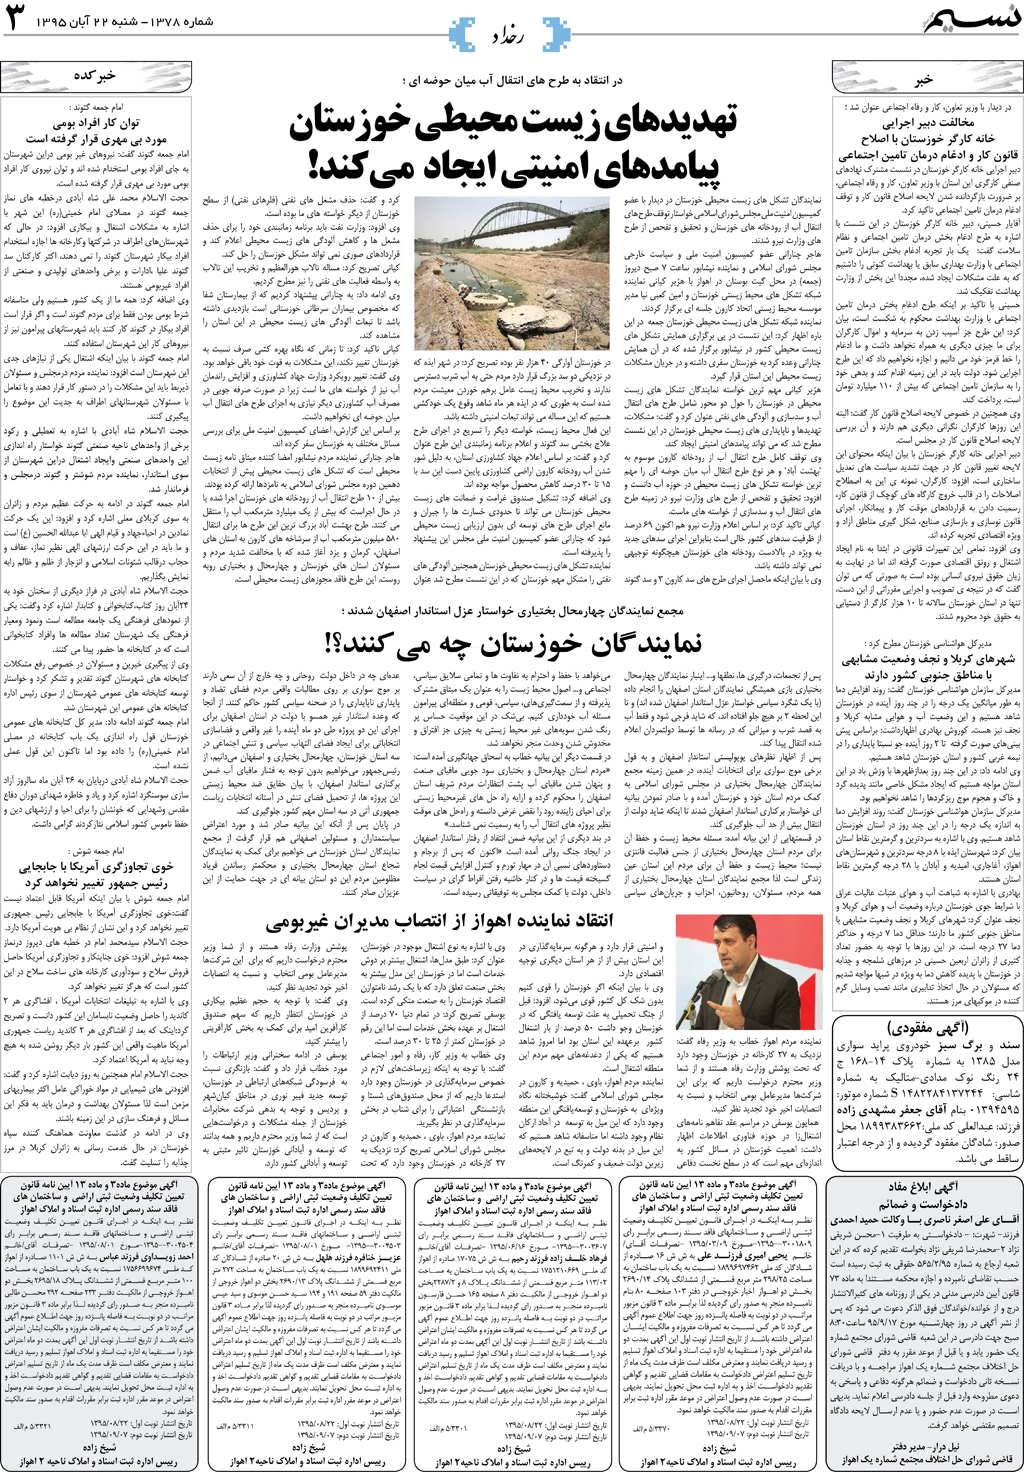 صفحه رخداد روزنامه نسیم شماره 1378